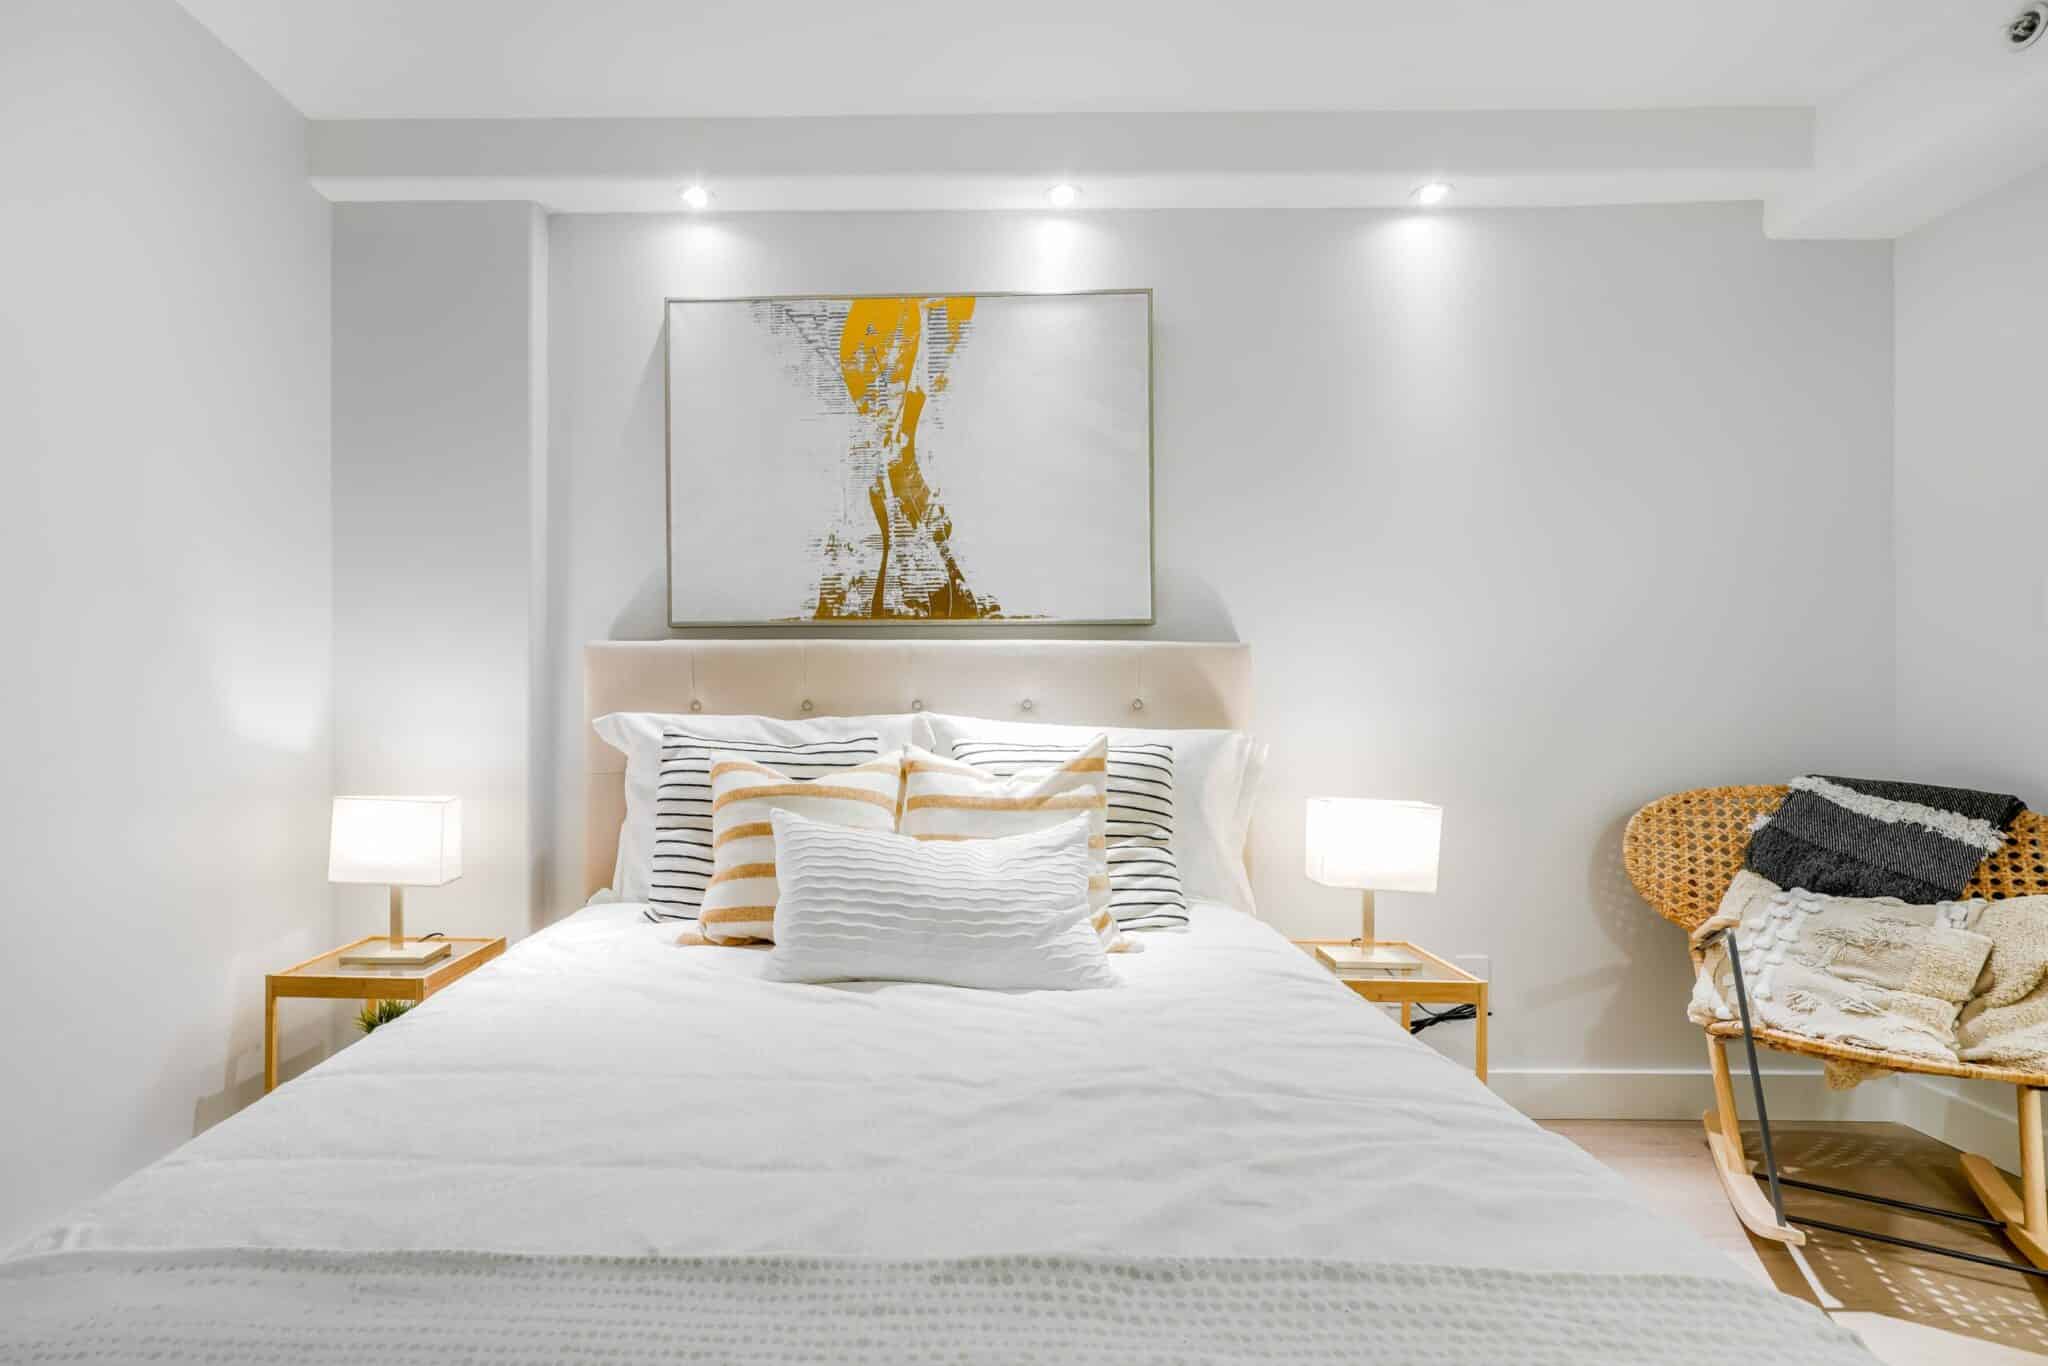 bedroom-renovation-staging-bed-light-drop-ceiling-design-build